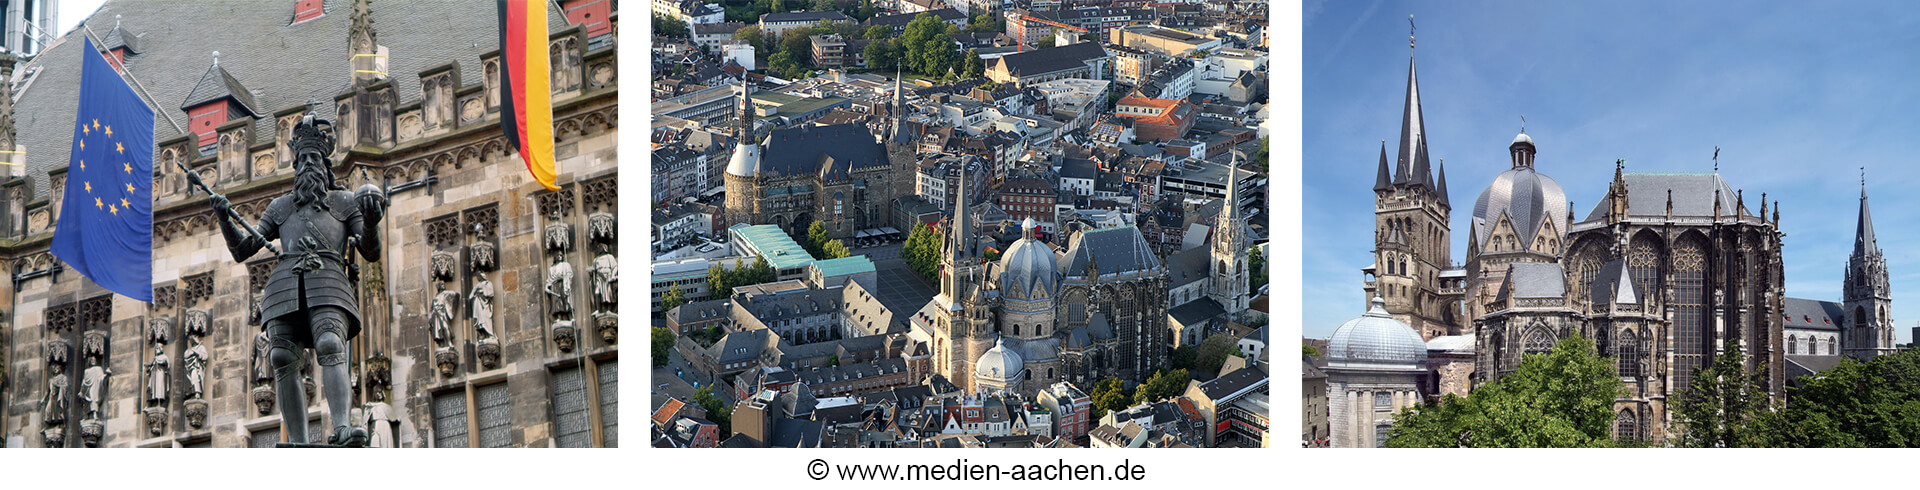 Aachen-city